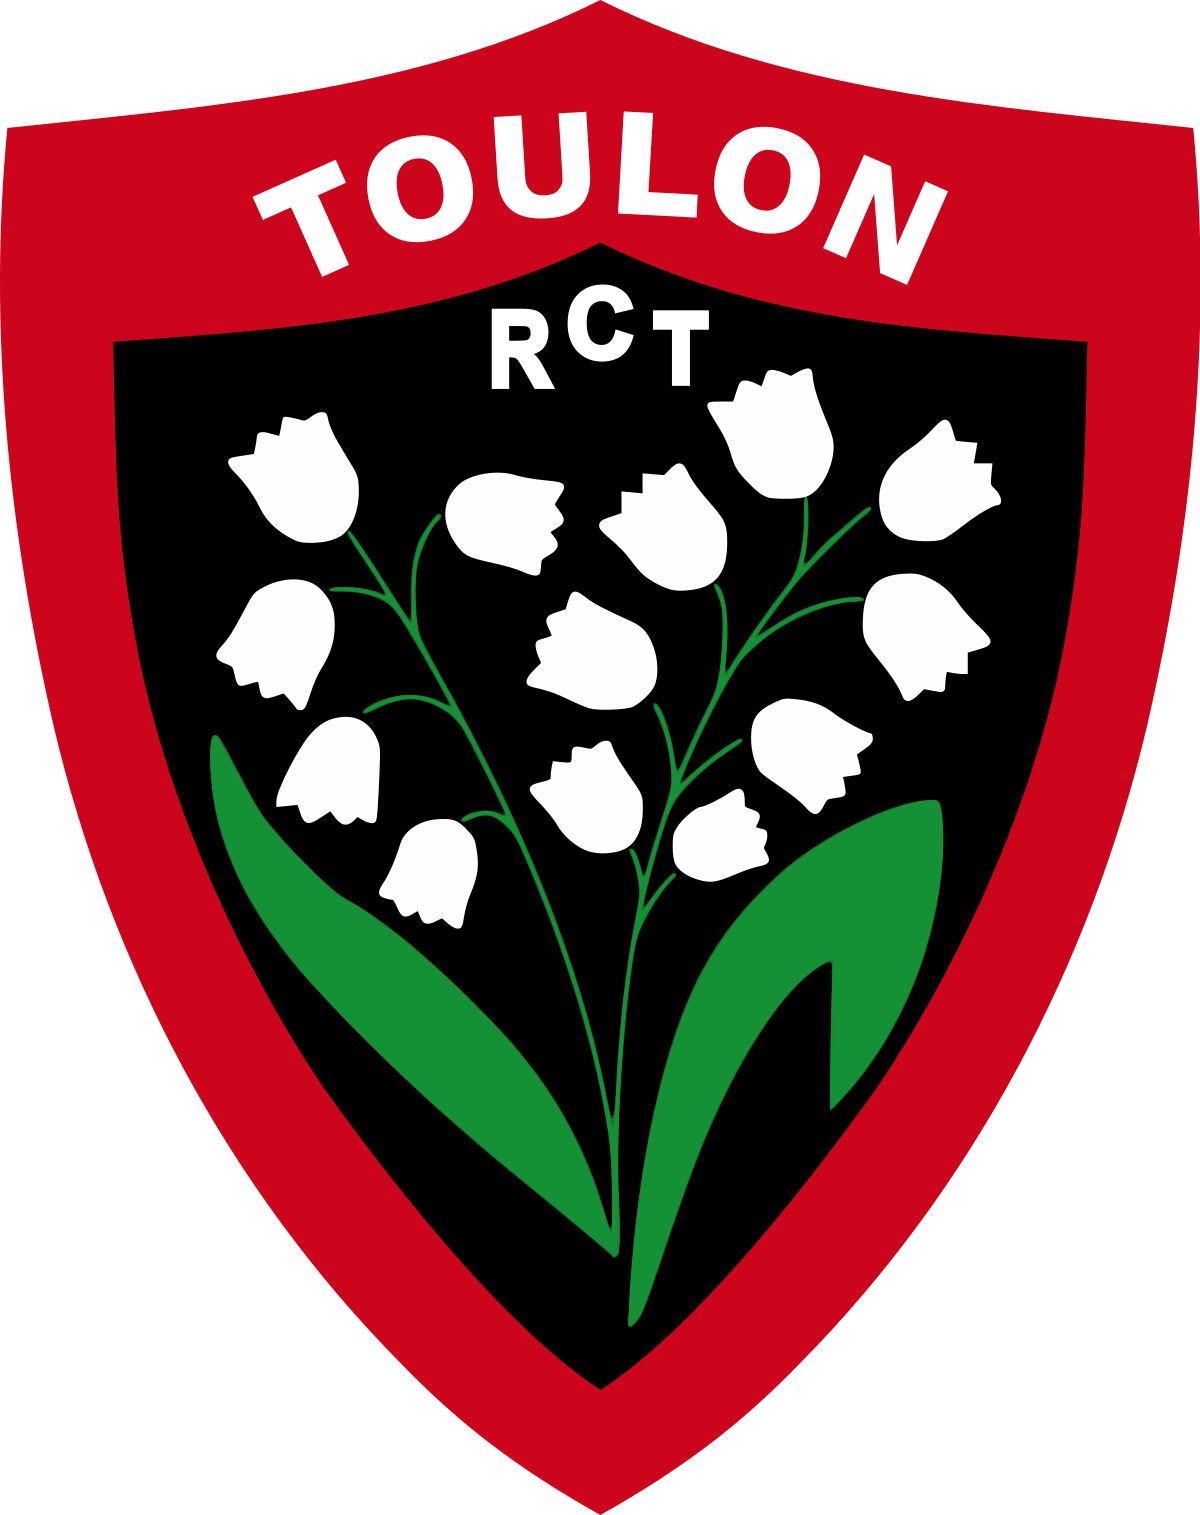 Billets RCT Toulon